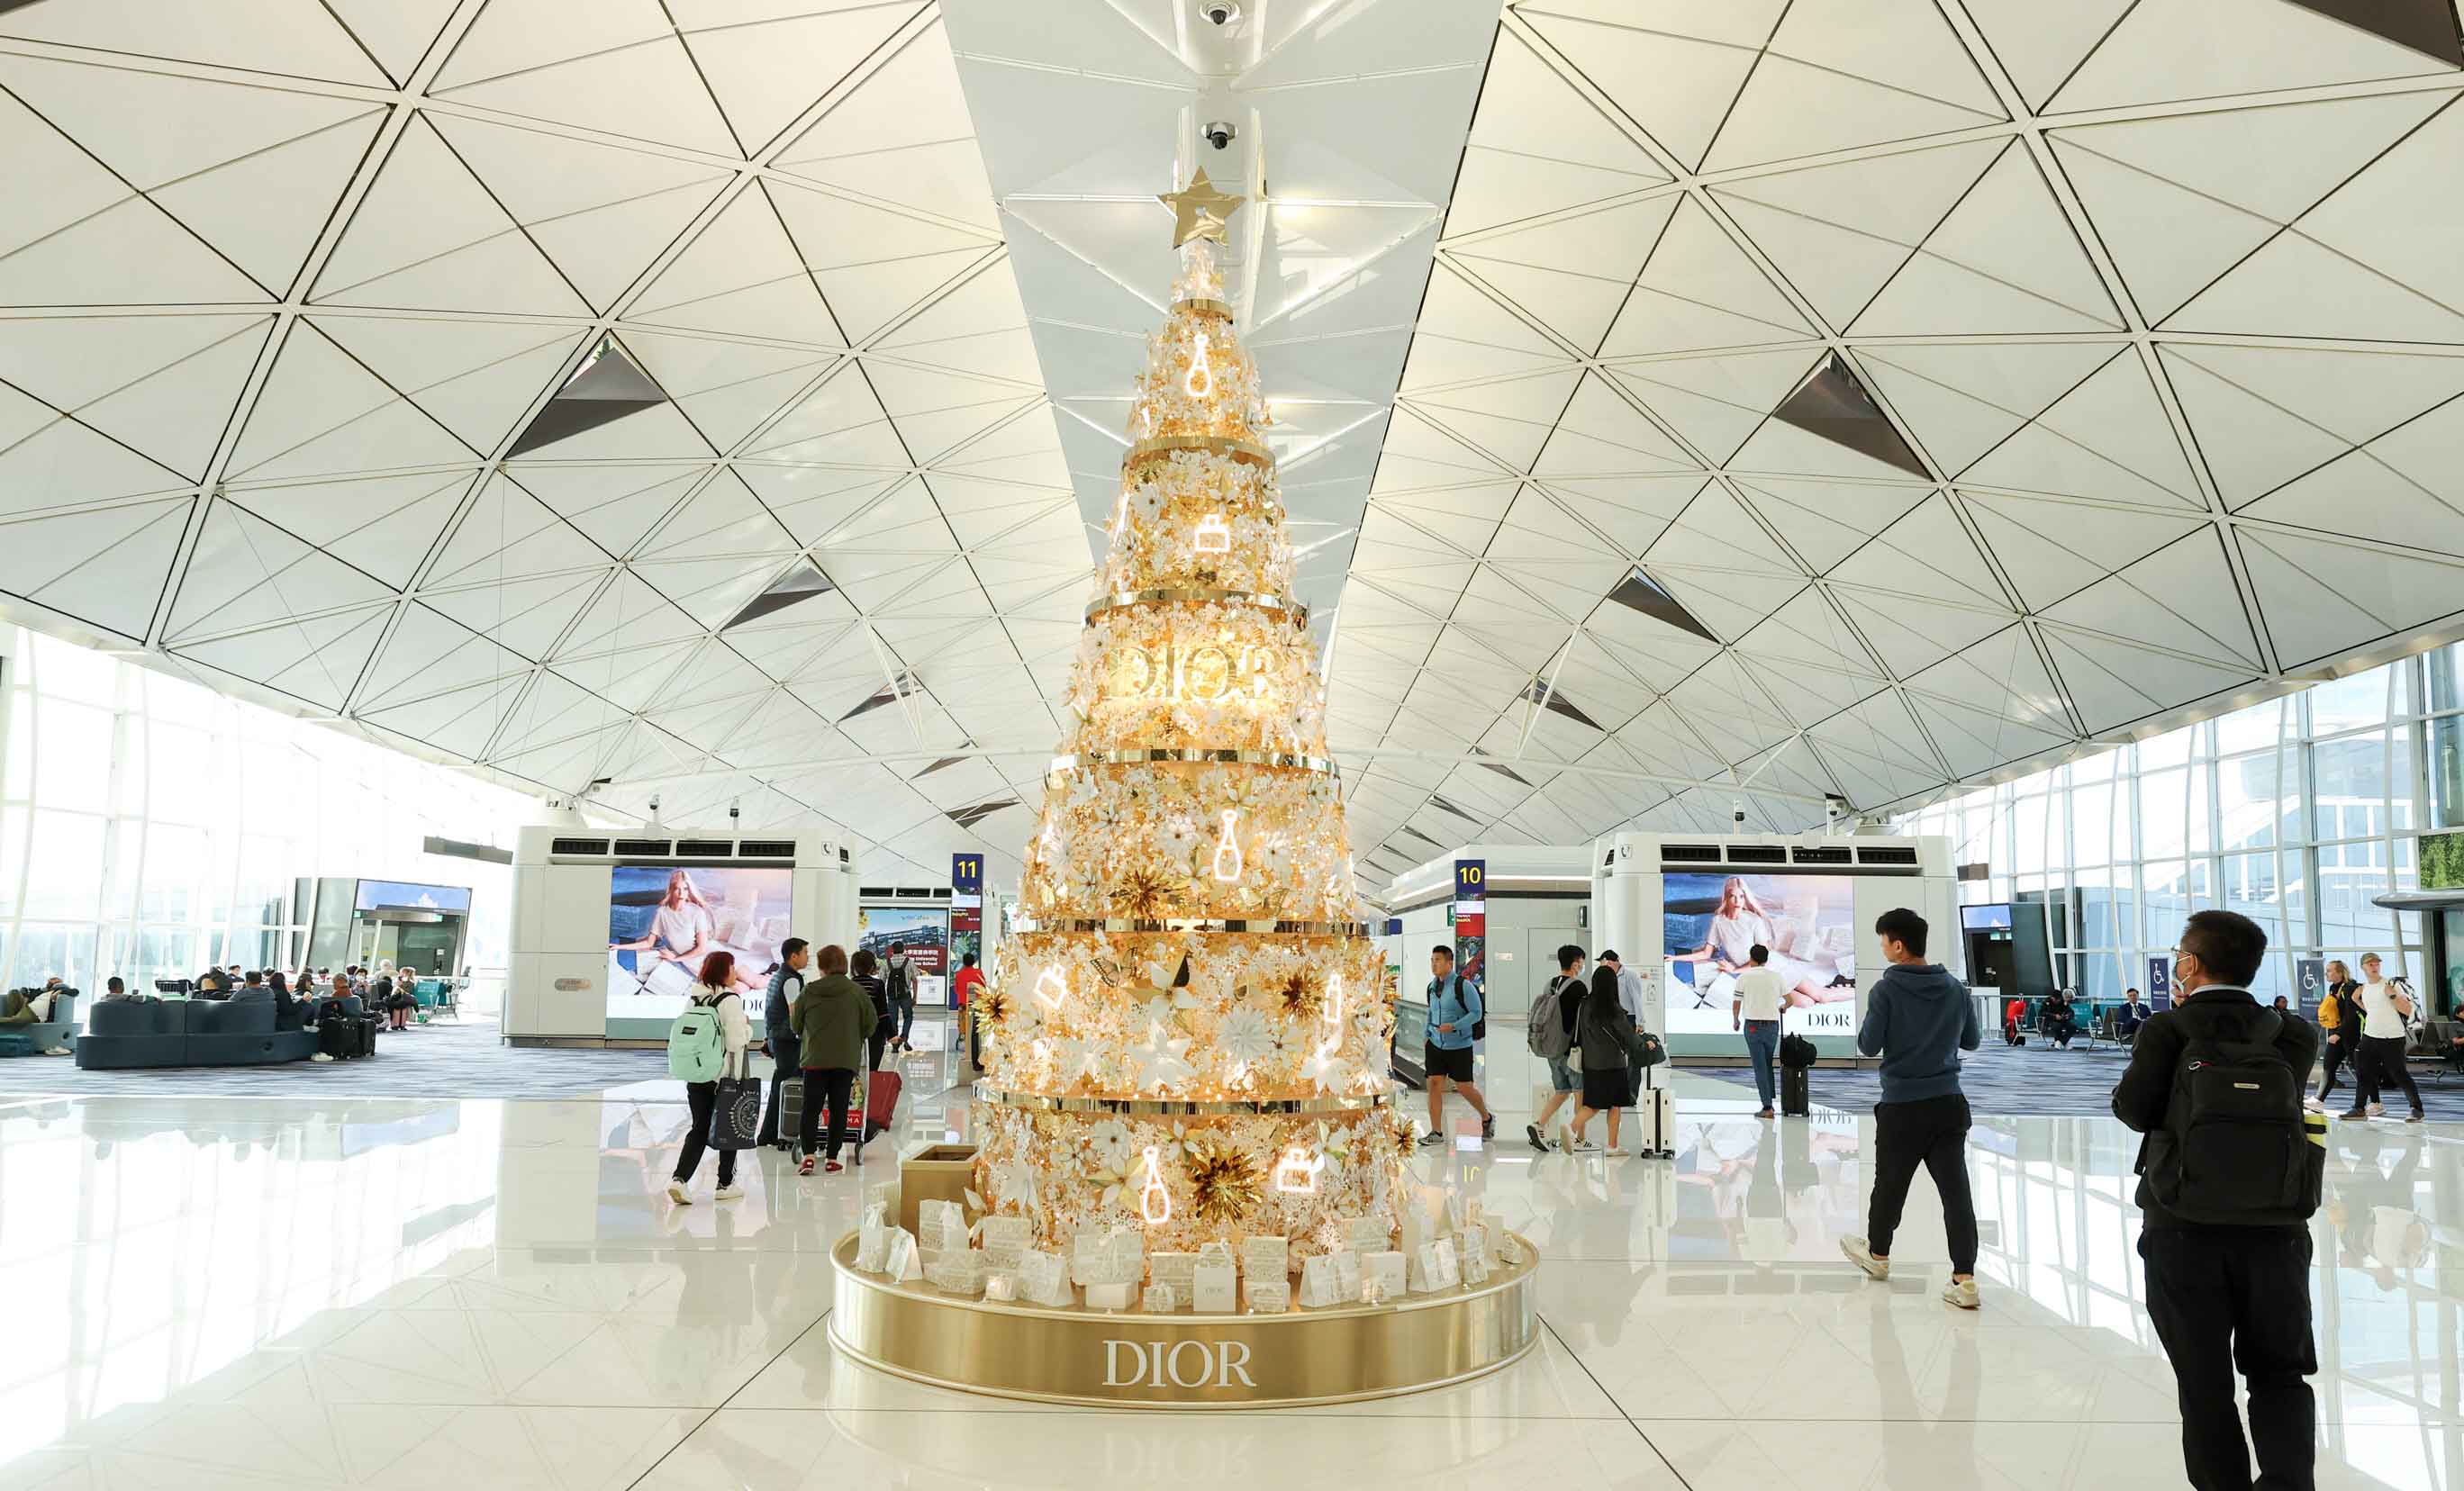 Dior at Hong Kong airport - Attractive setup